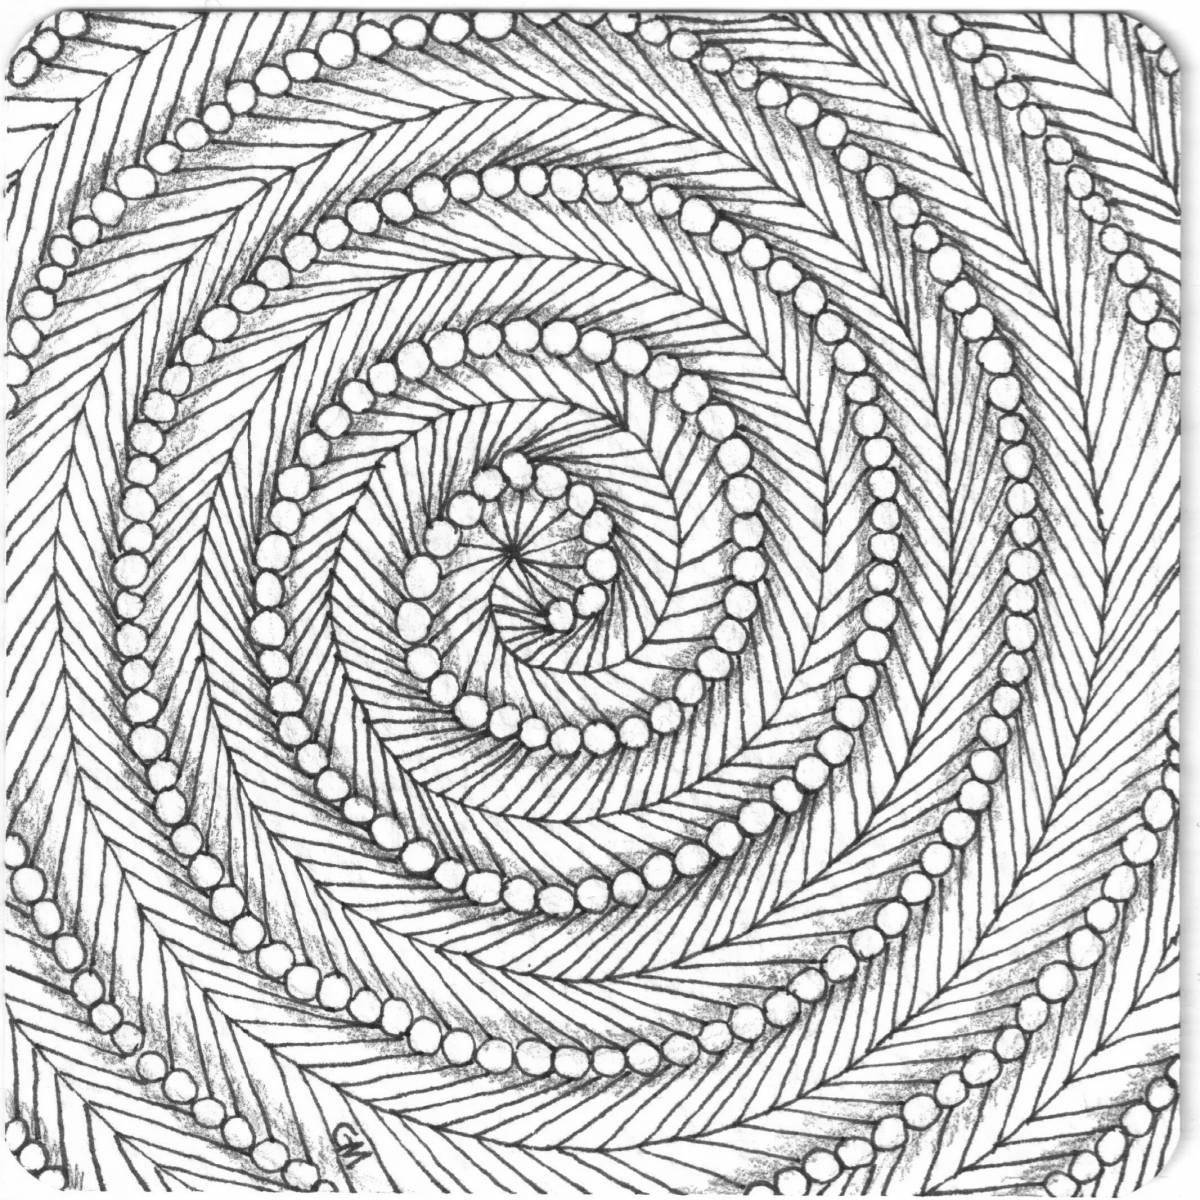 Увлекательная круговая спиральная раскраска гарри поттера